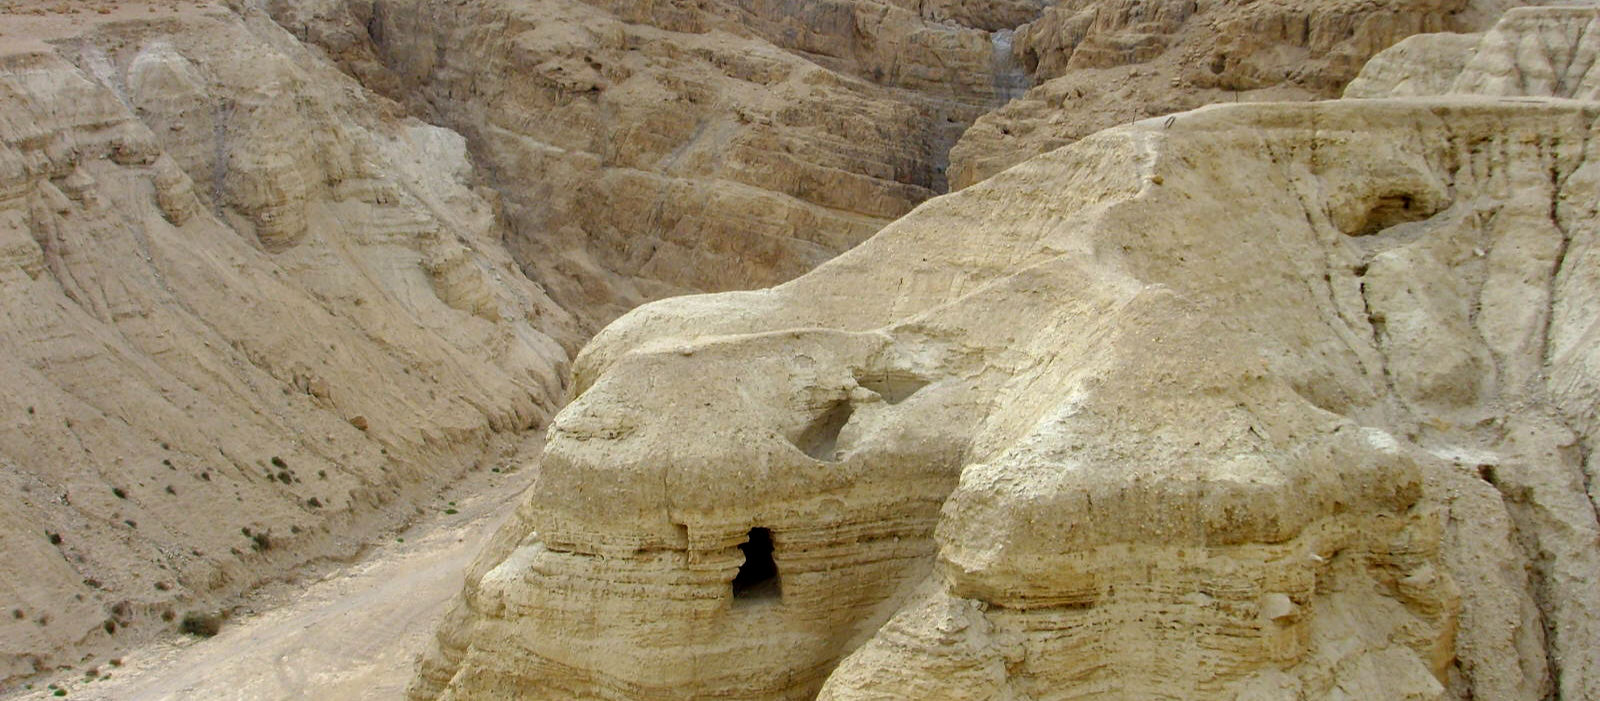 Qumran caves